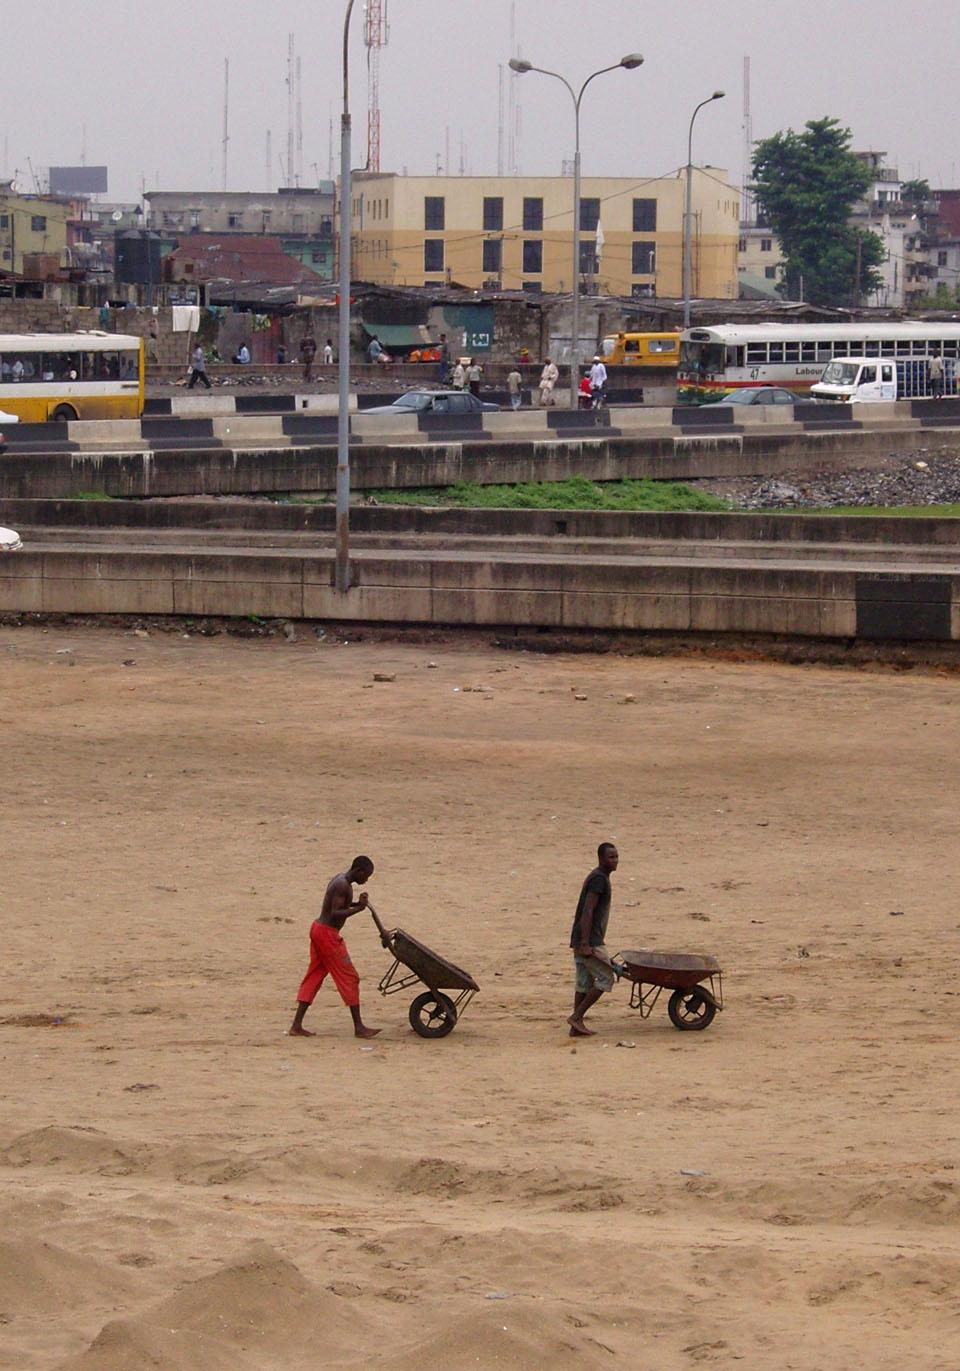 Charlie Koolhaas, True Cities: Lagos, Nigeria